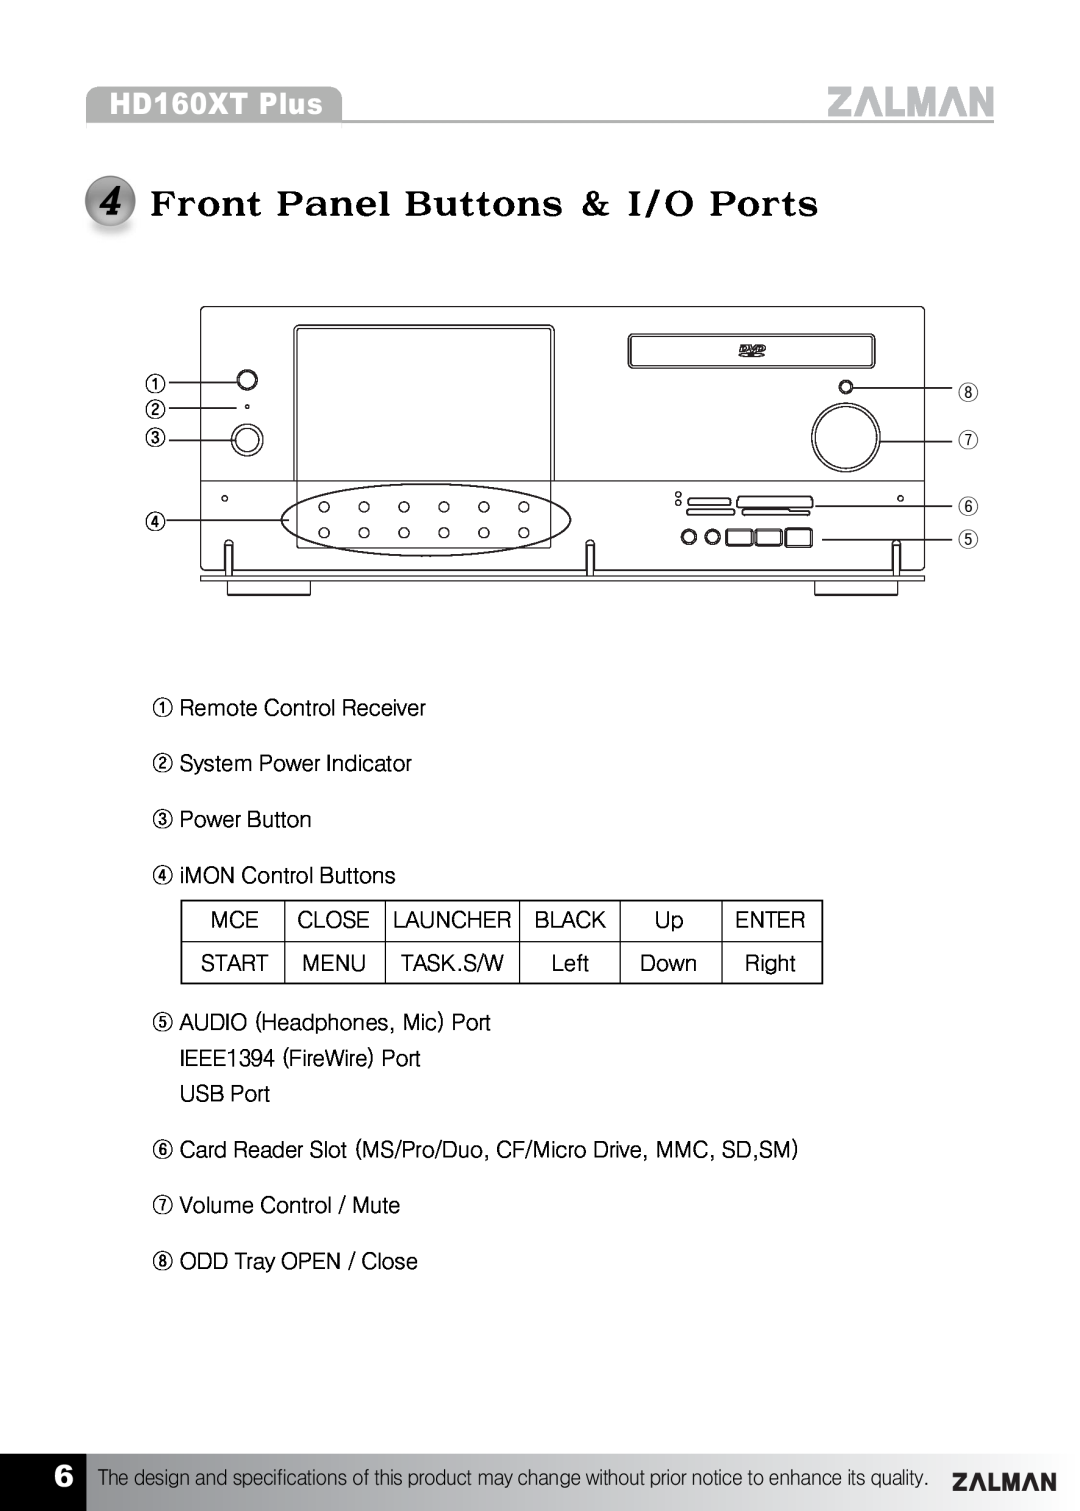 ZALMAN HD160XT Plus manual 